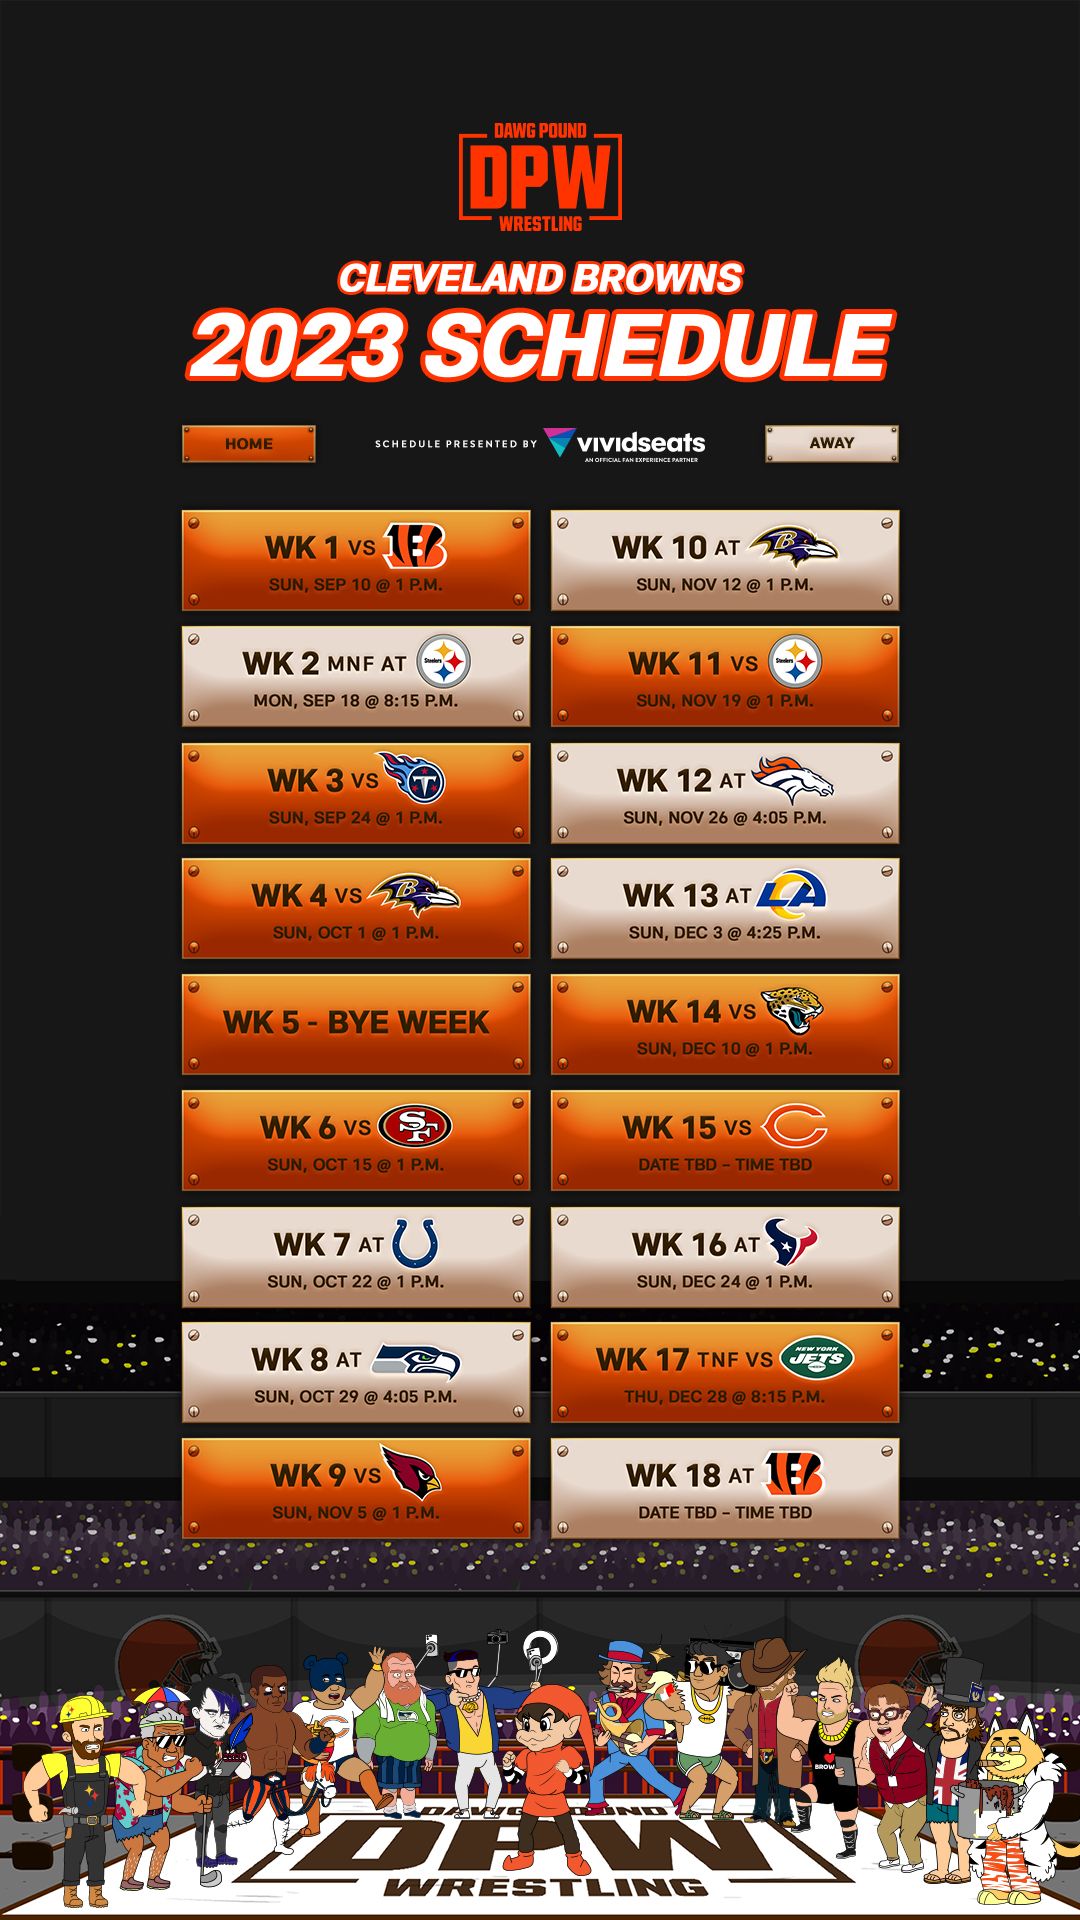 2022-2023 NFL Playoffs TV Schedule - Printable